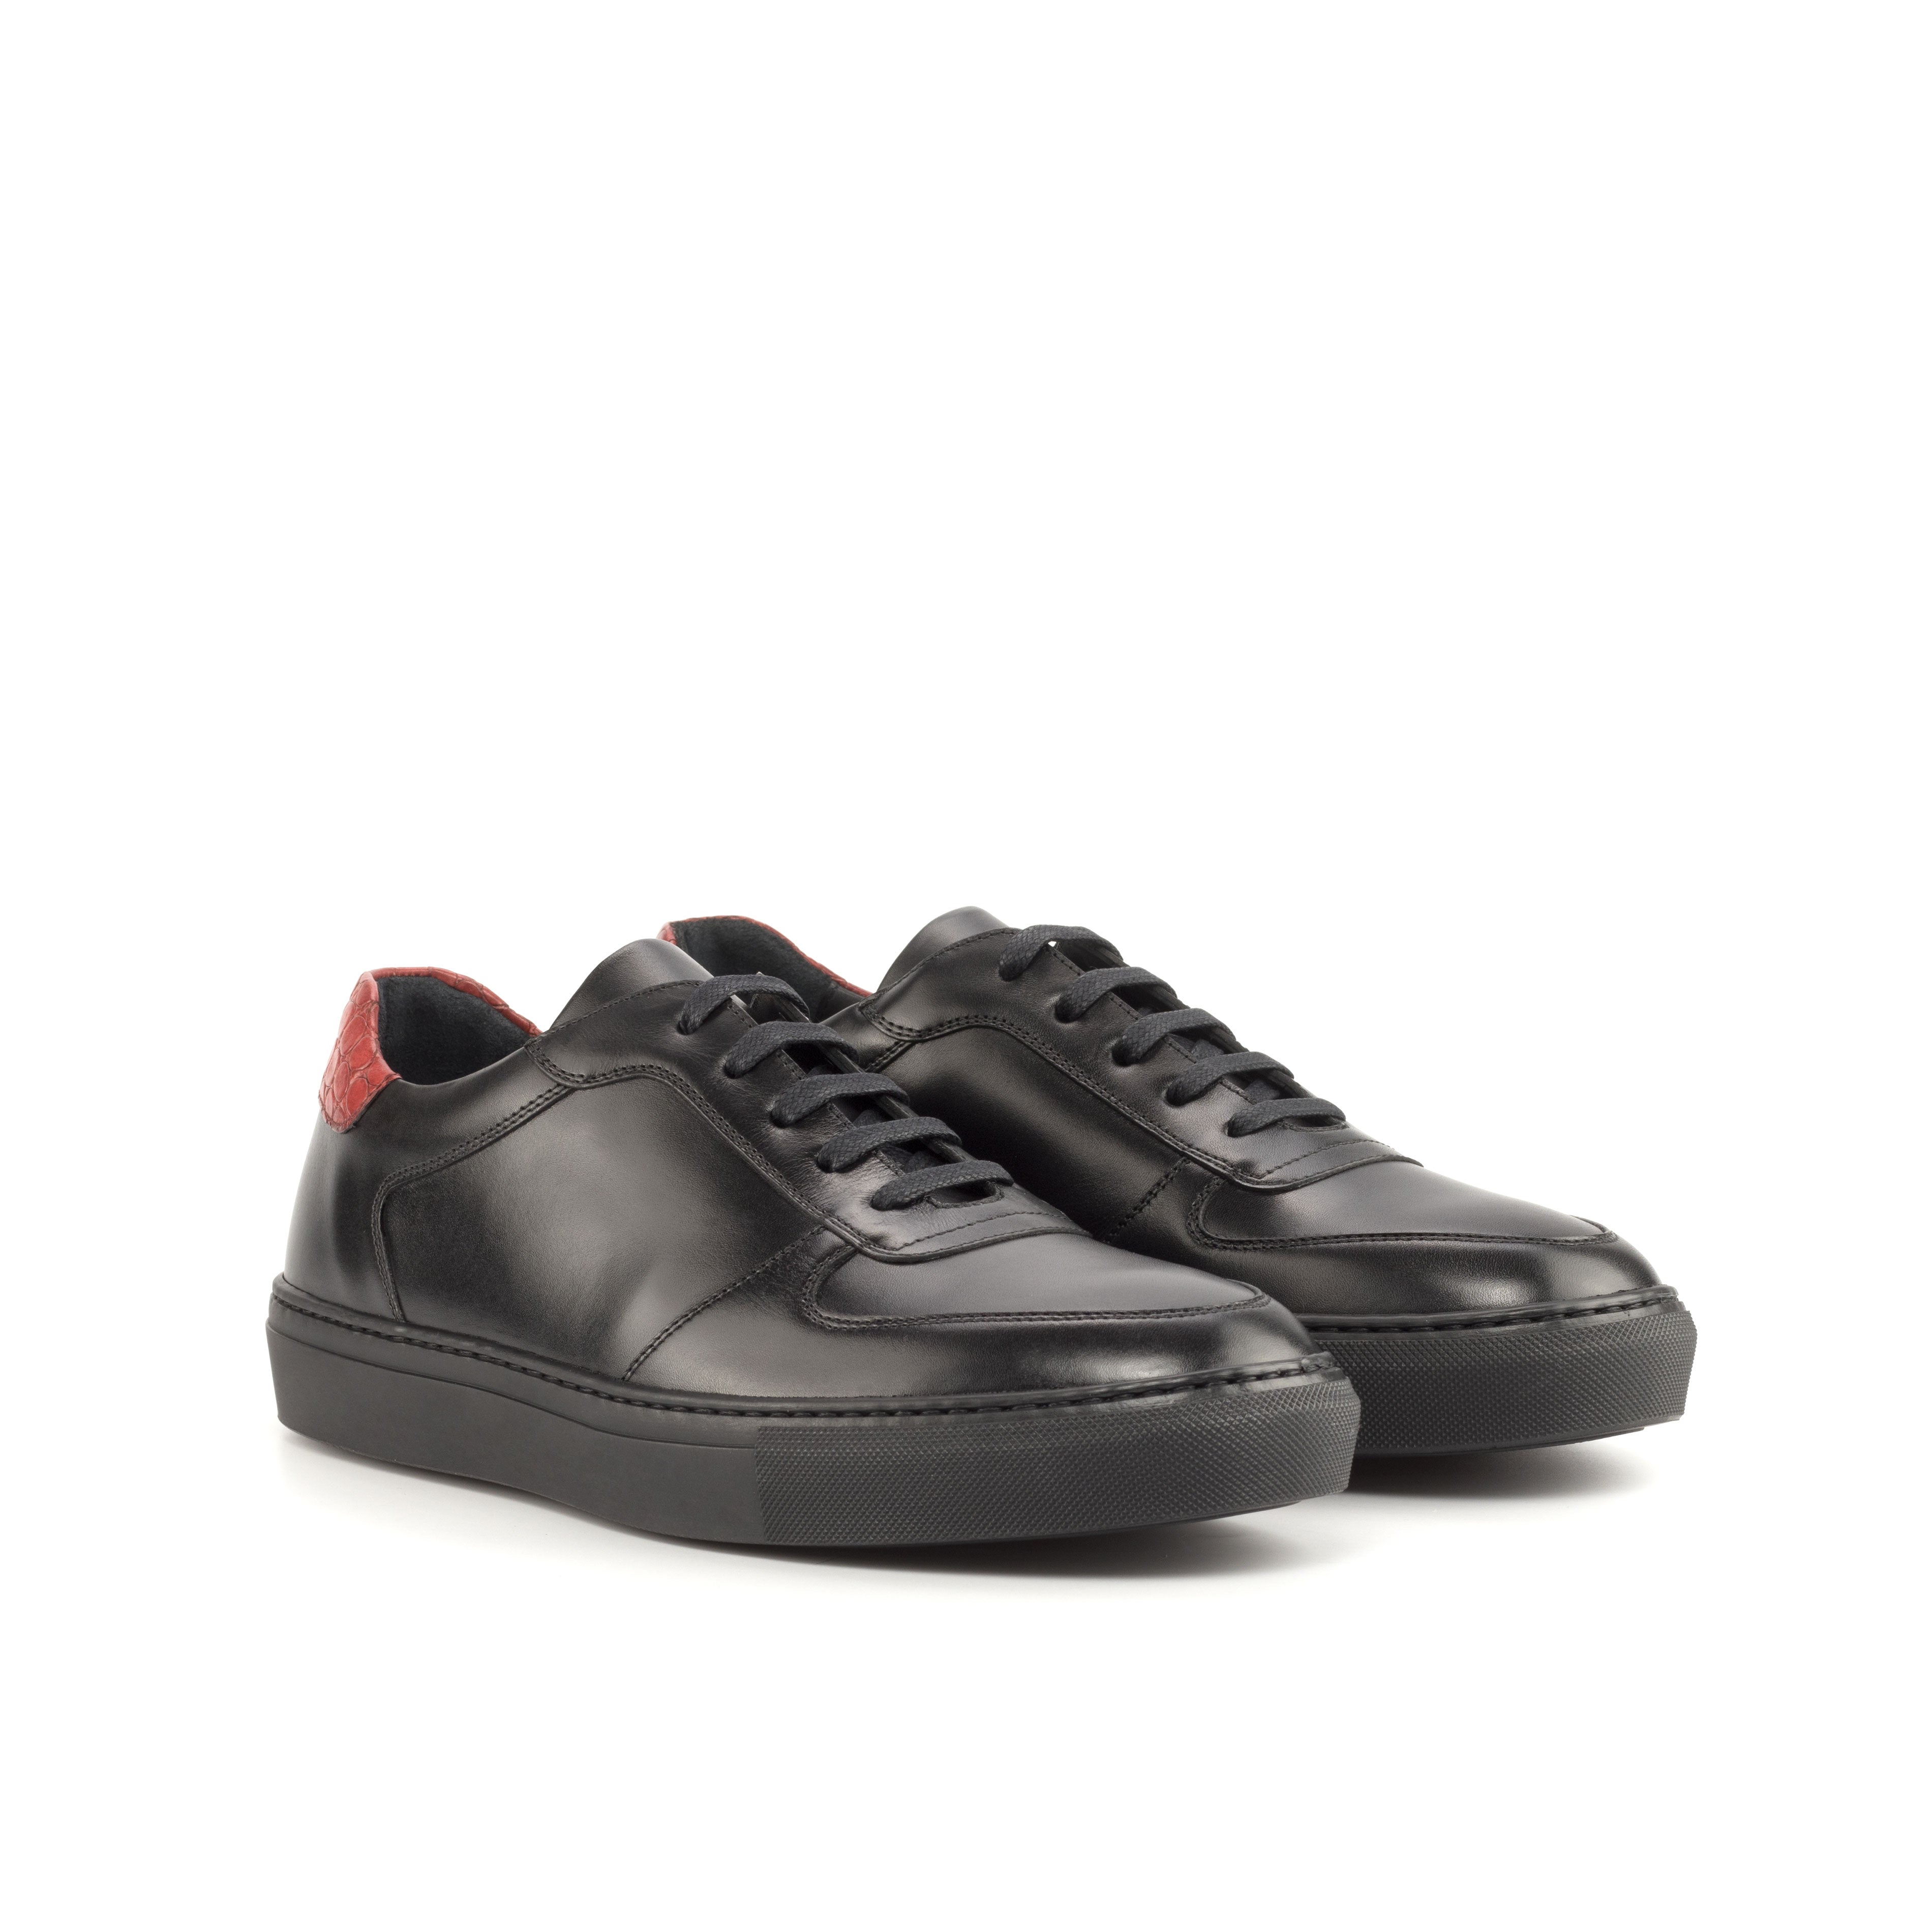 Louis Vuitton Rivoli Sneaker in Gr. 44